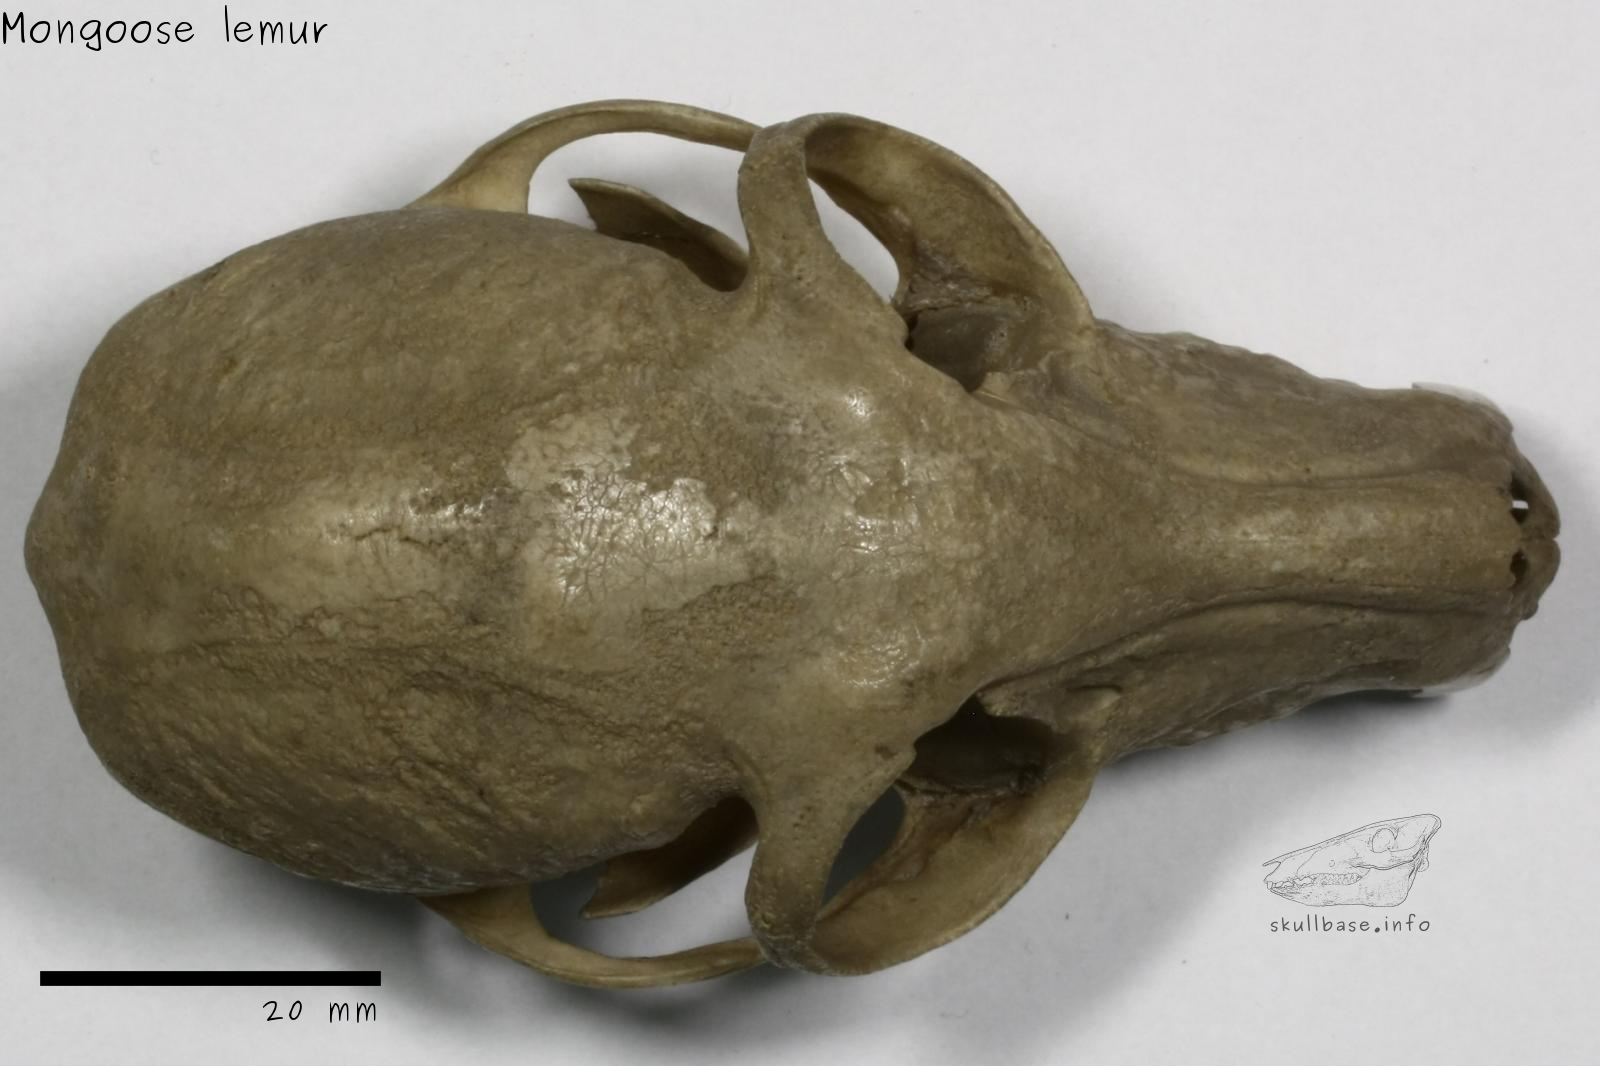 Mongoose lemur (Eulemur mongoz) skull dorsal view